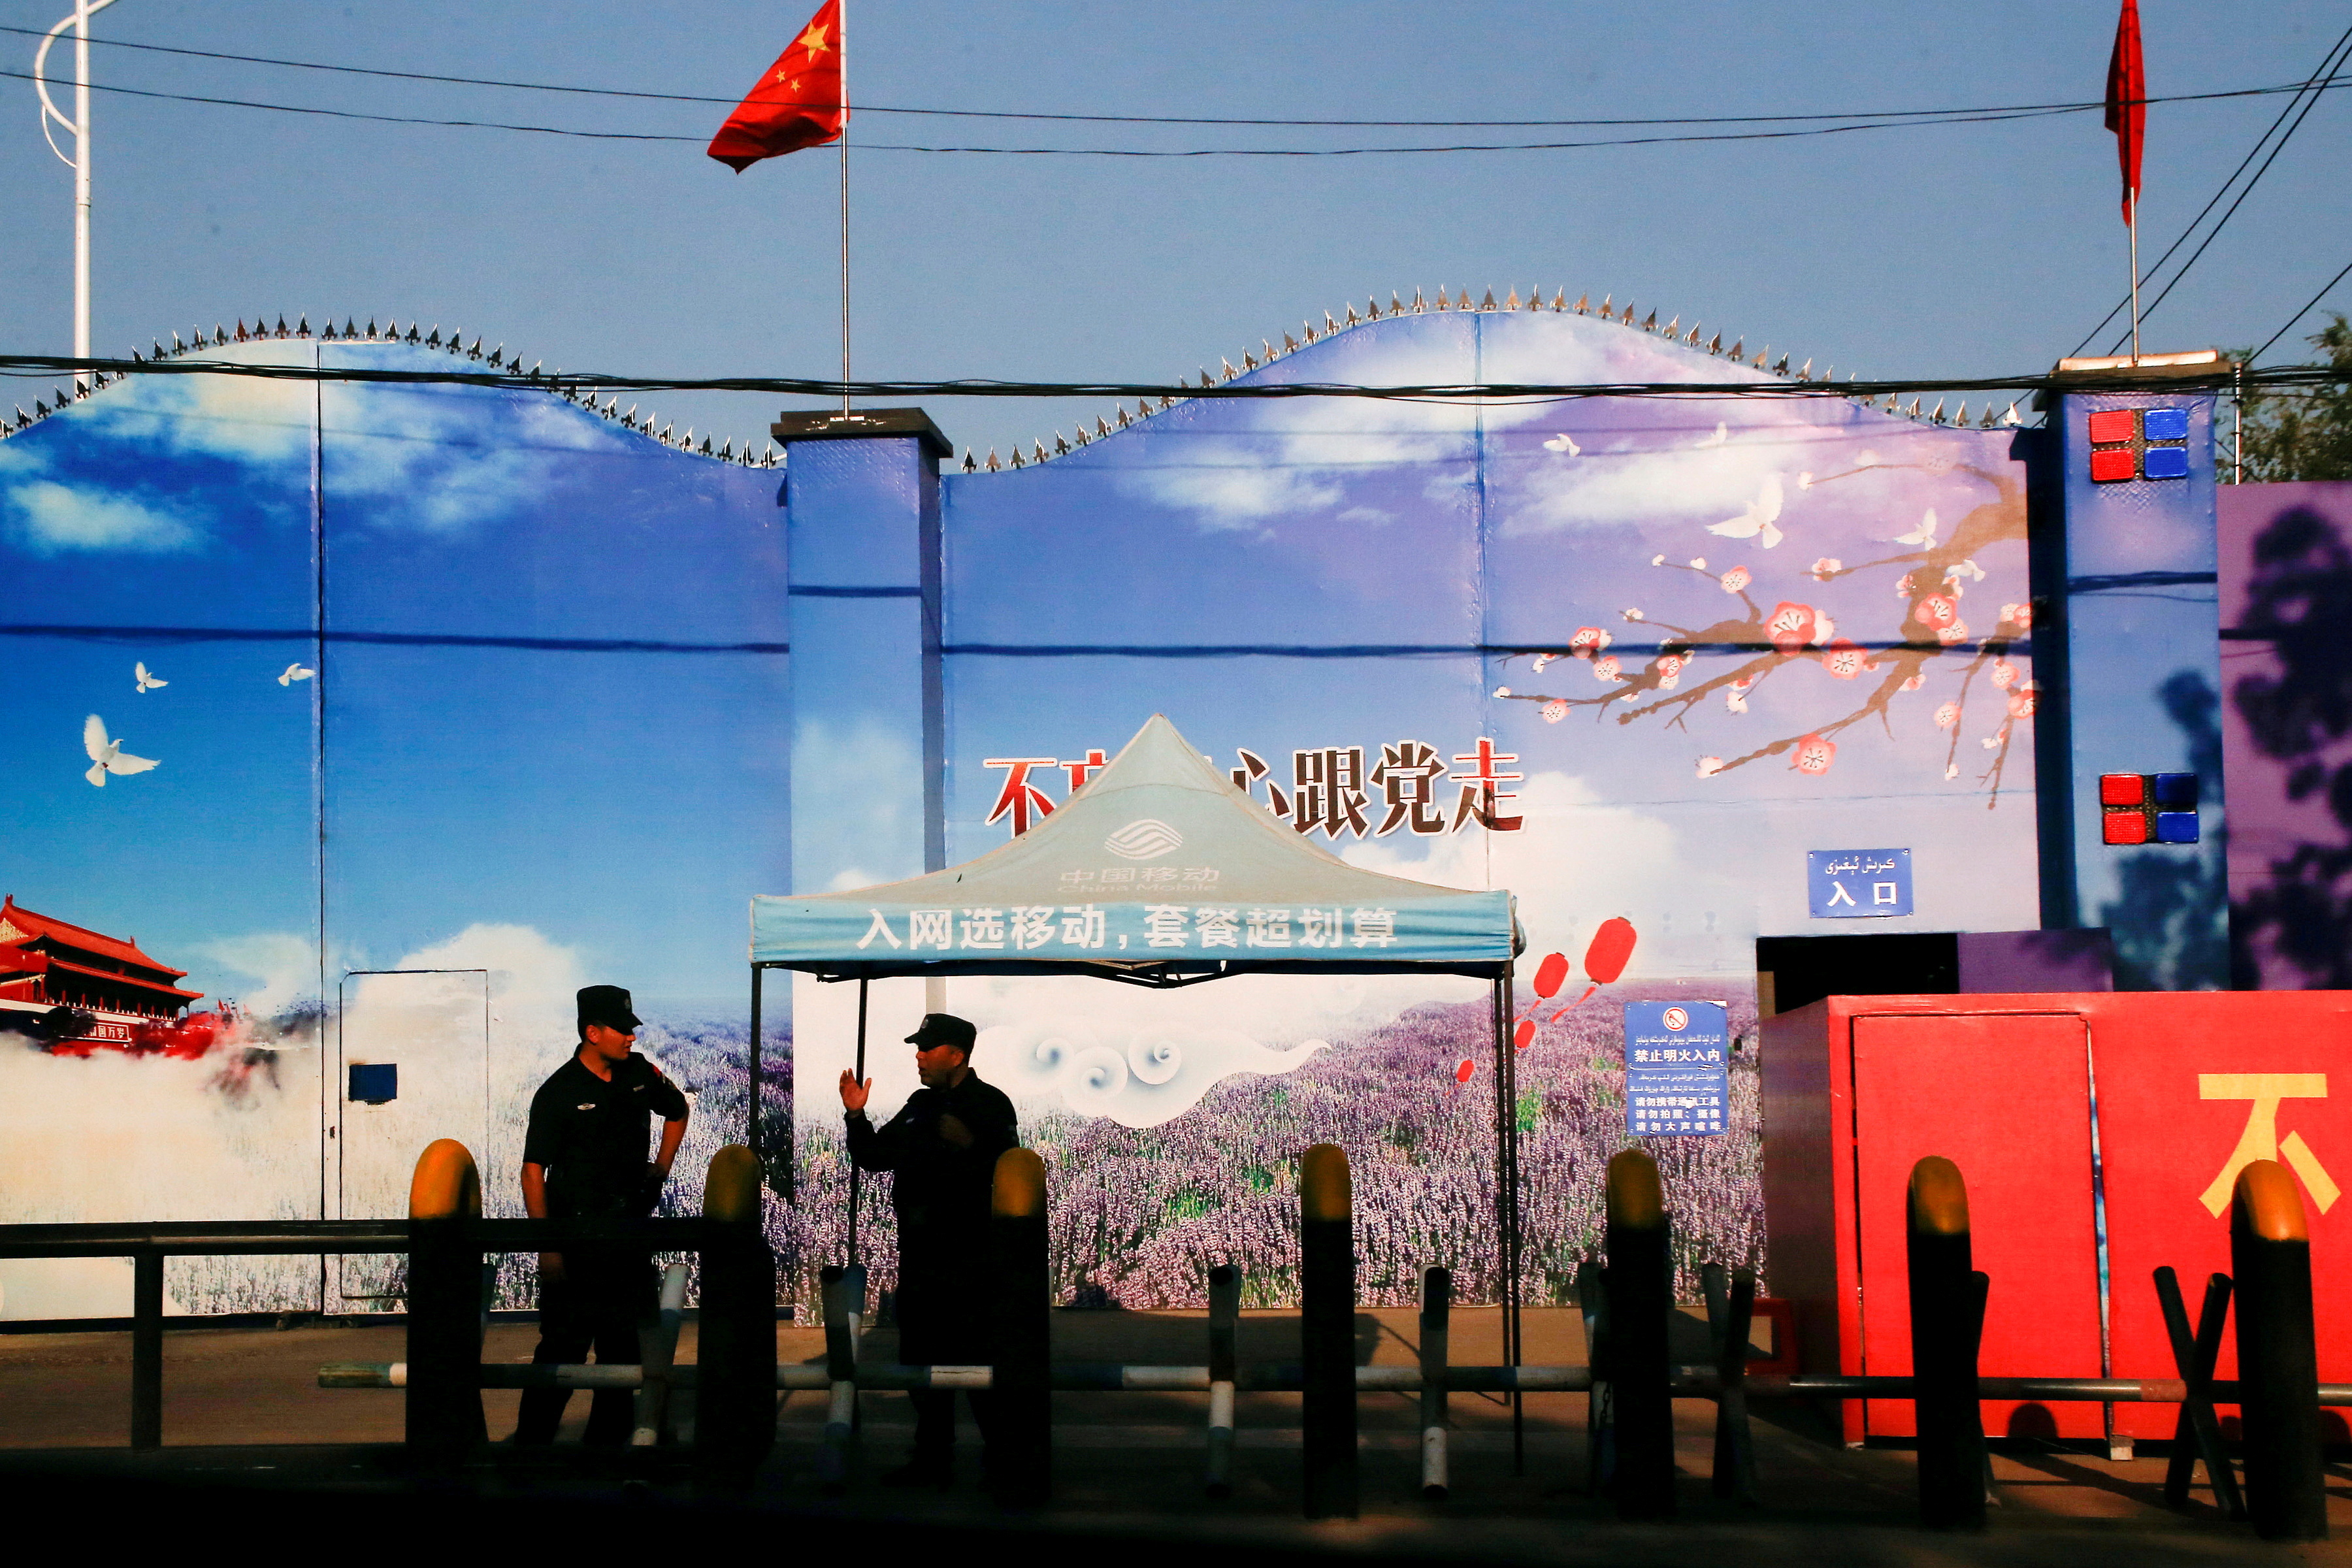 Guardias de seguridad custodian las puertas de uno de los centros de entrenamiento cuestionados por organismos de derechos humanos en Xinjiang (REUTERS/Thomas Peter)